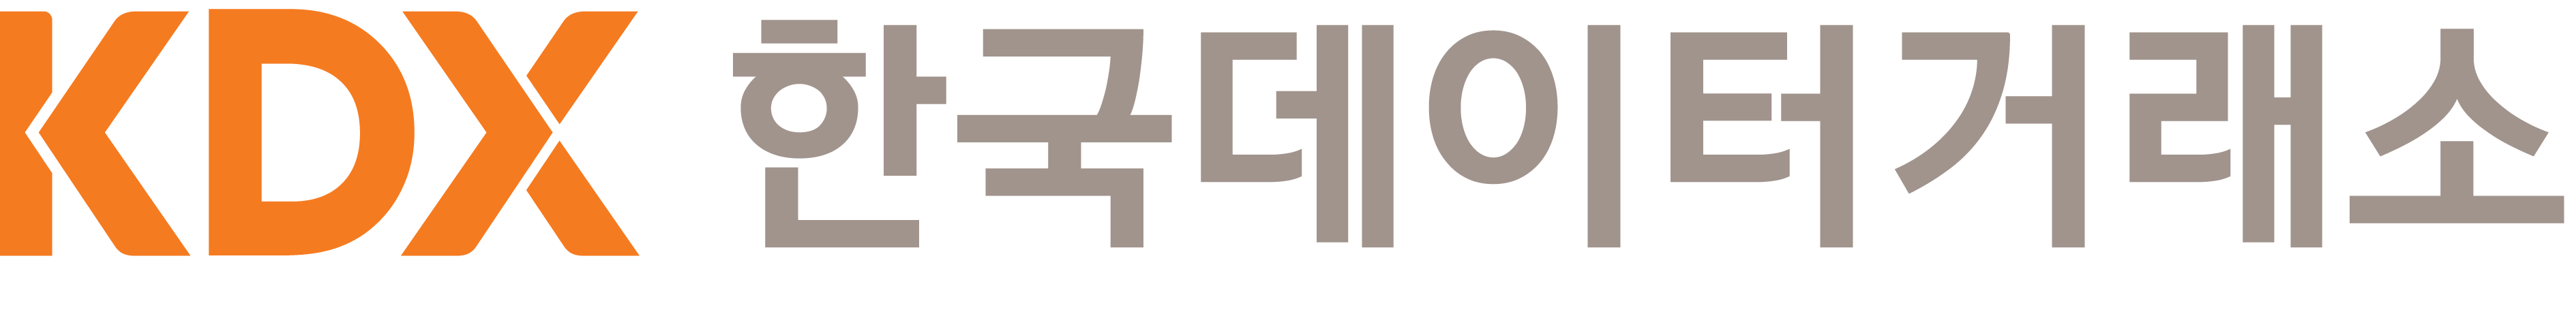 img-logo1.png